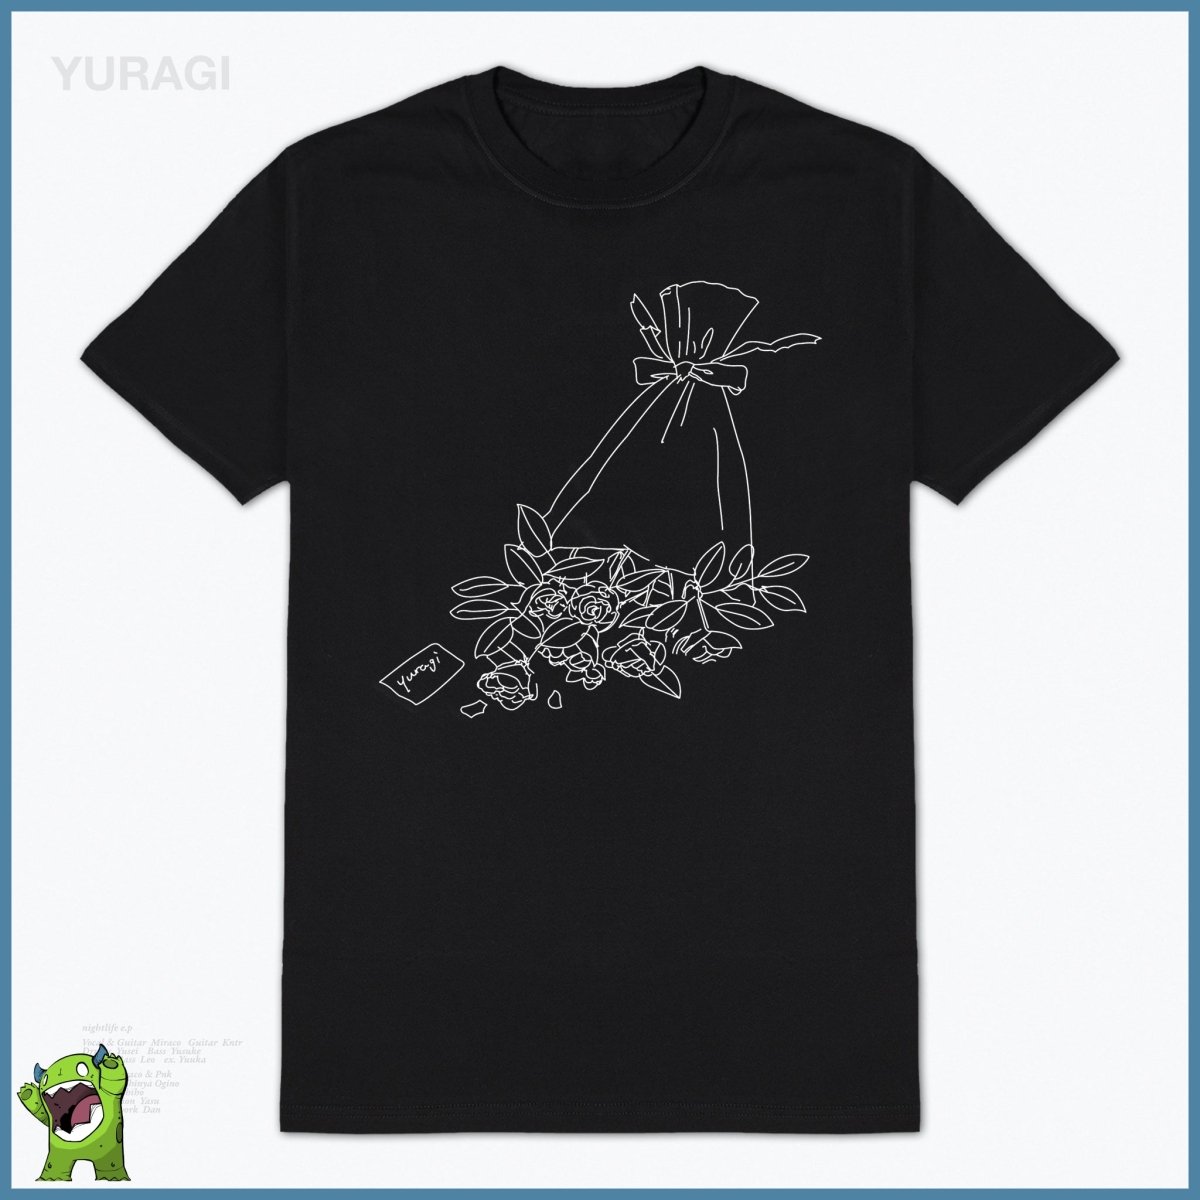 Yuragi - Nighlife T-Shirt